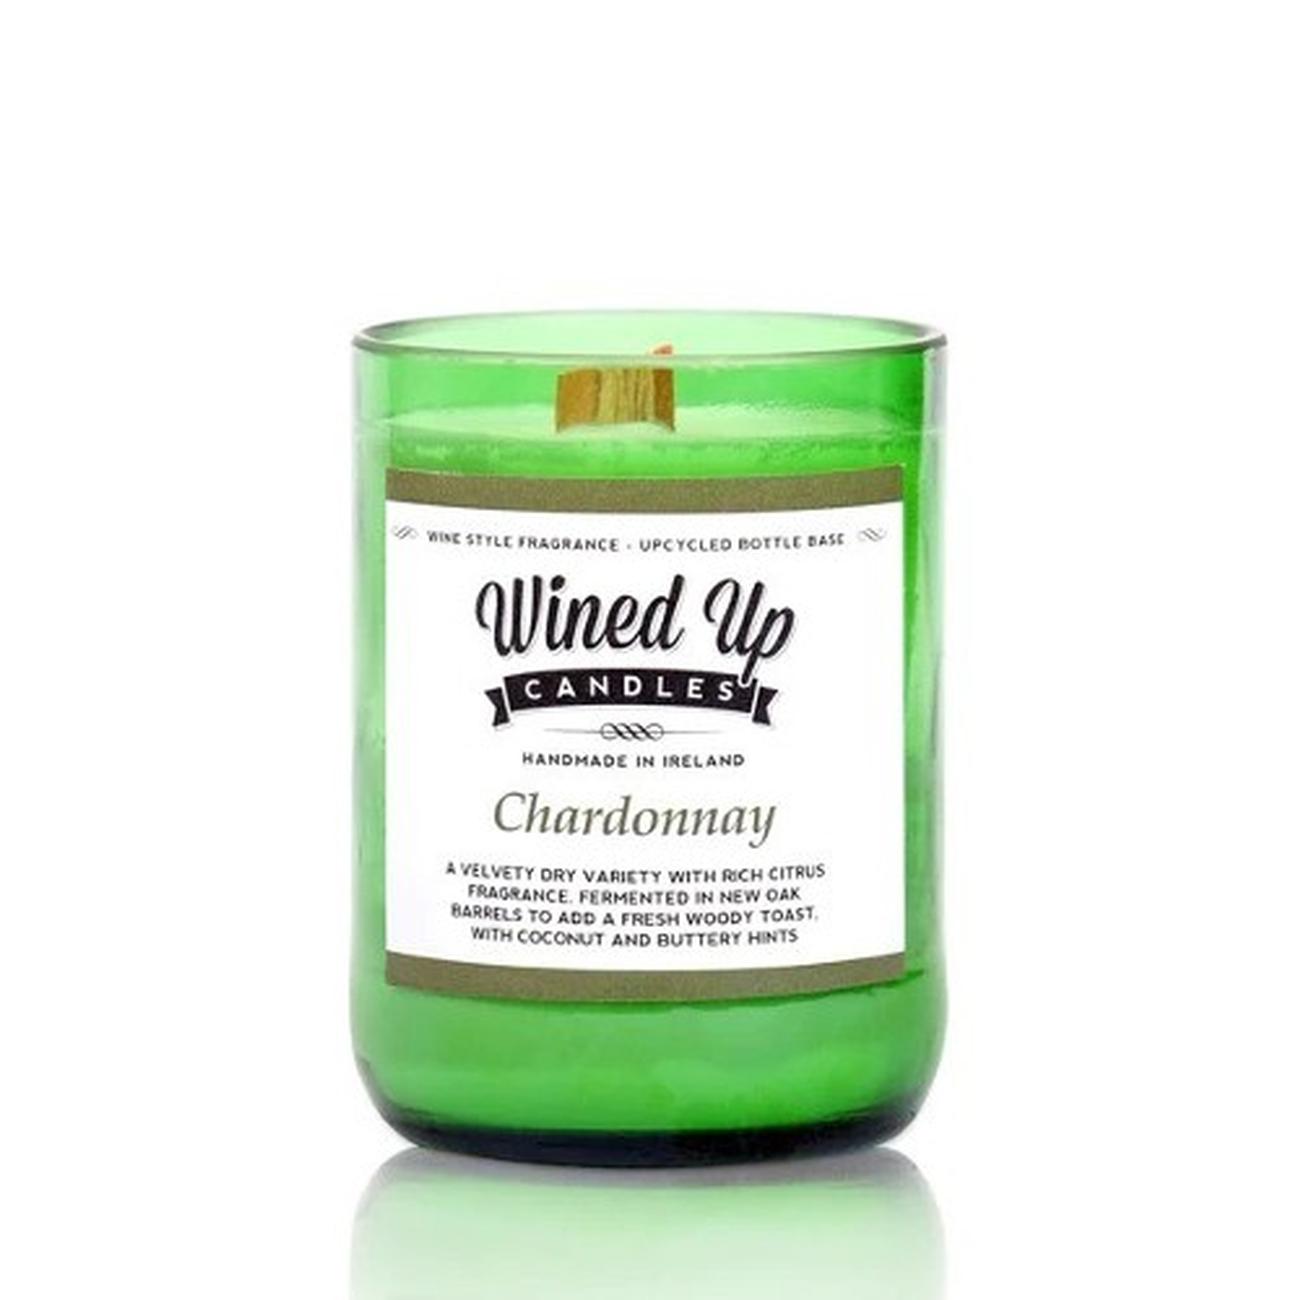 dalkey-aromatics-wined-up-candle-chardonnay - Dalkey Aromatics Wined Up Candle Chardonnay